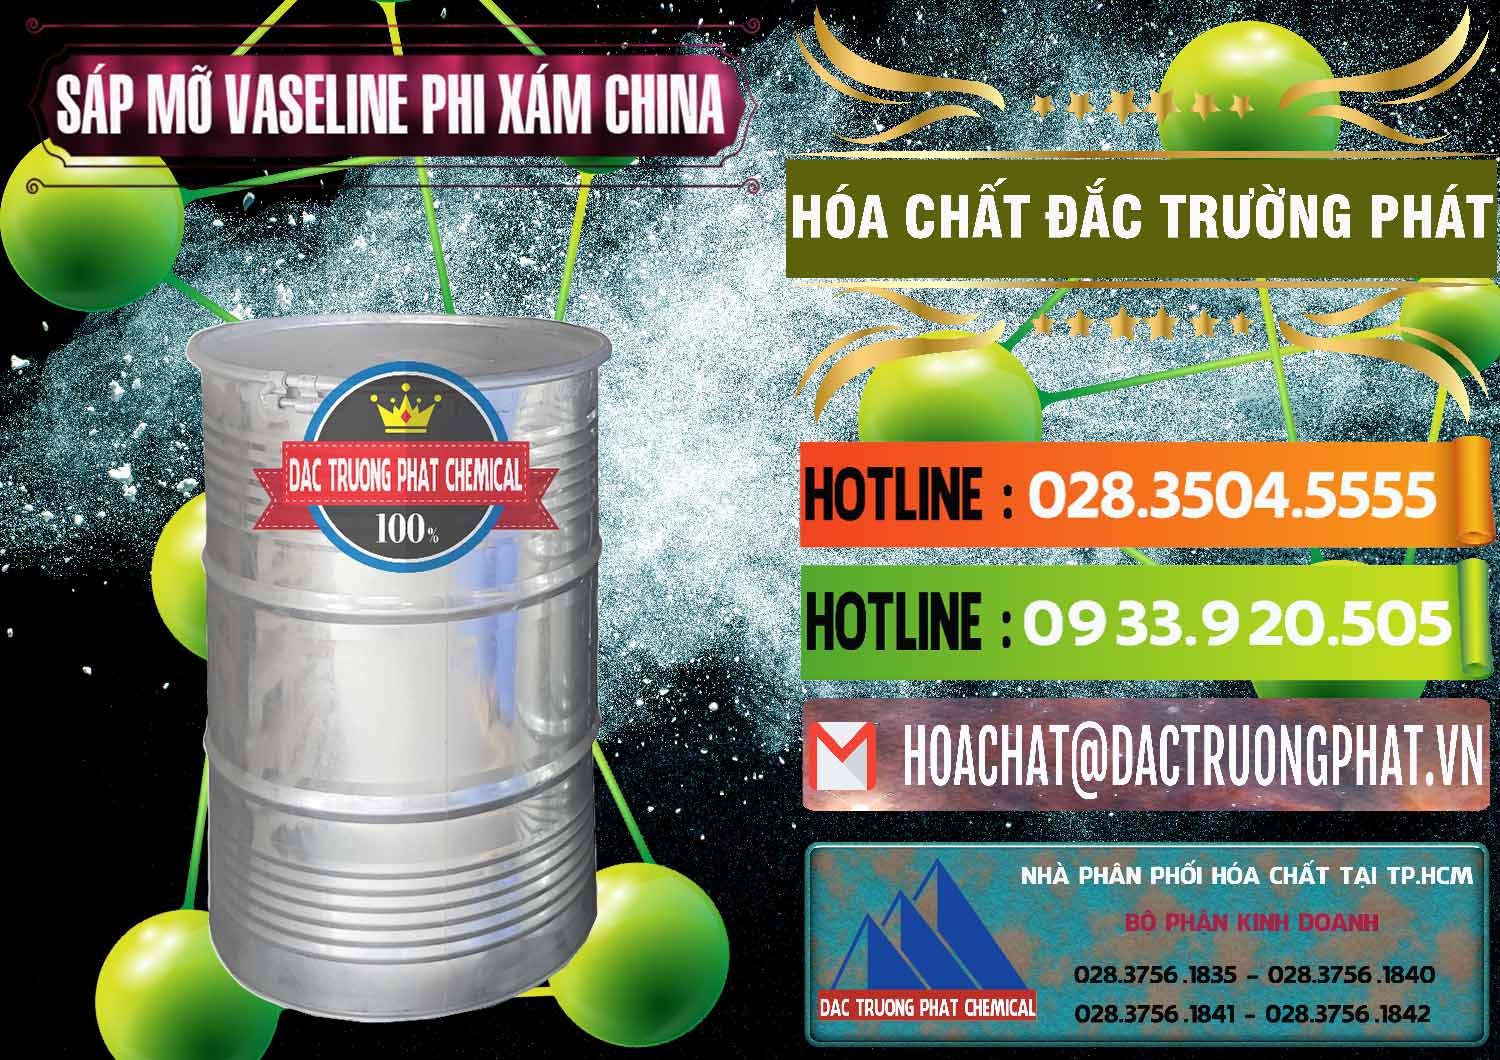 Công ty cung cấp ( bán ) Sáp Mỡ Vaseline Phi Xám Trung Quốc China - 0291 - Đơn vị cung cấp & phân phối hóa chất tại TP.HCM - cungcaphoachat.com.vn